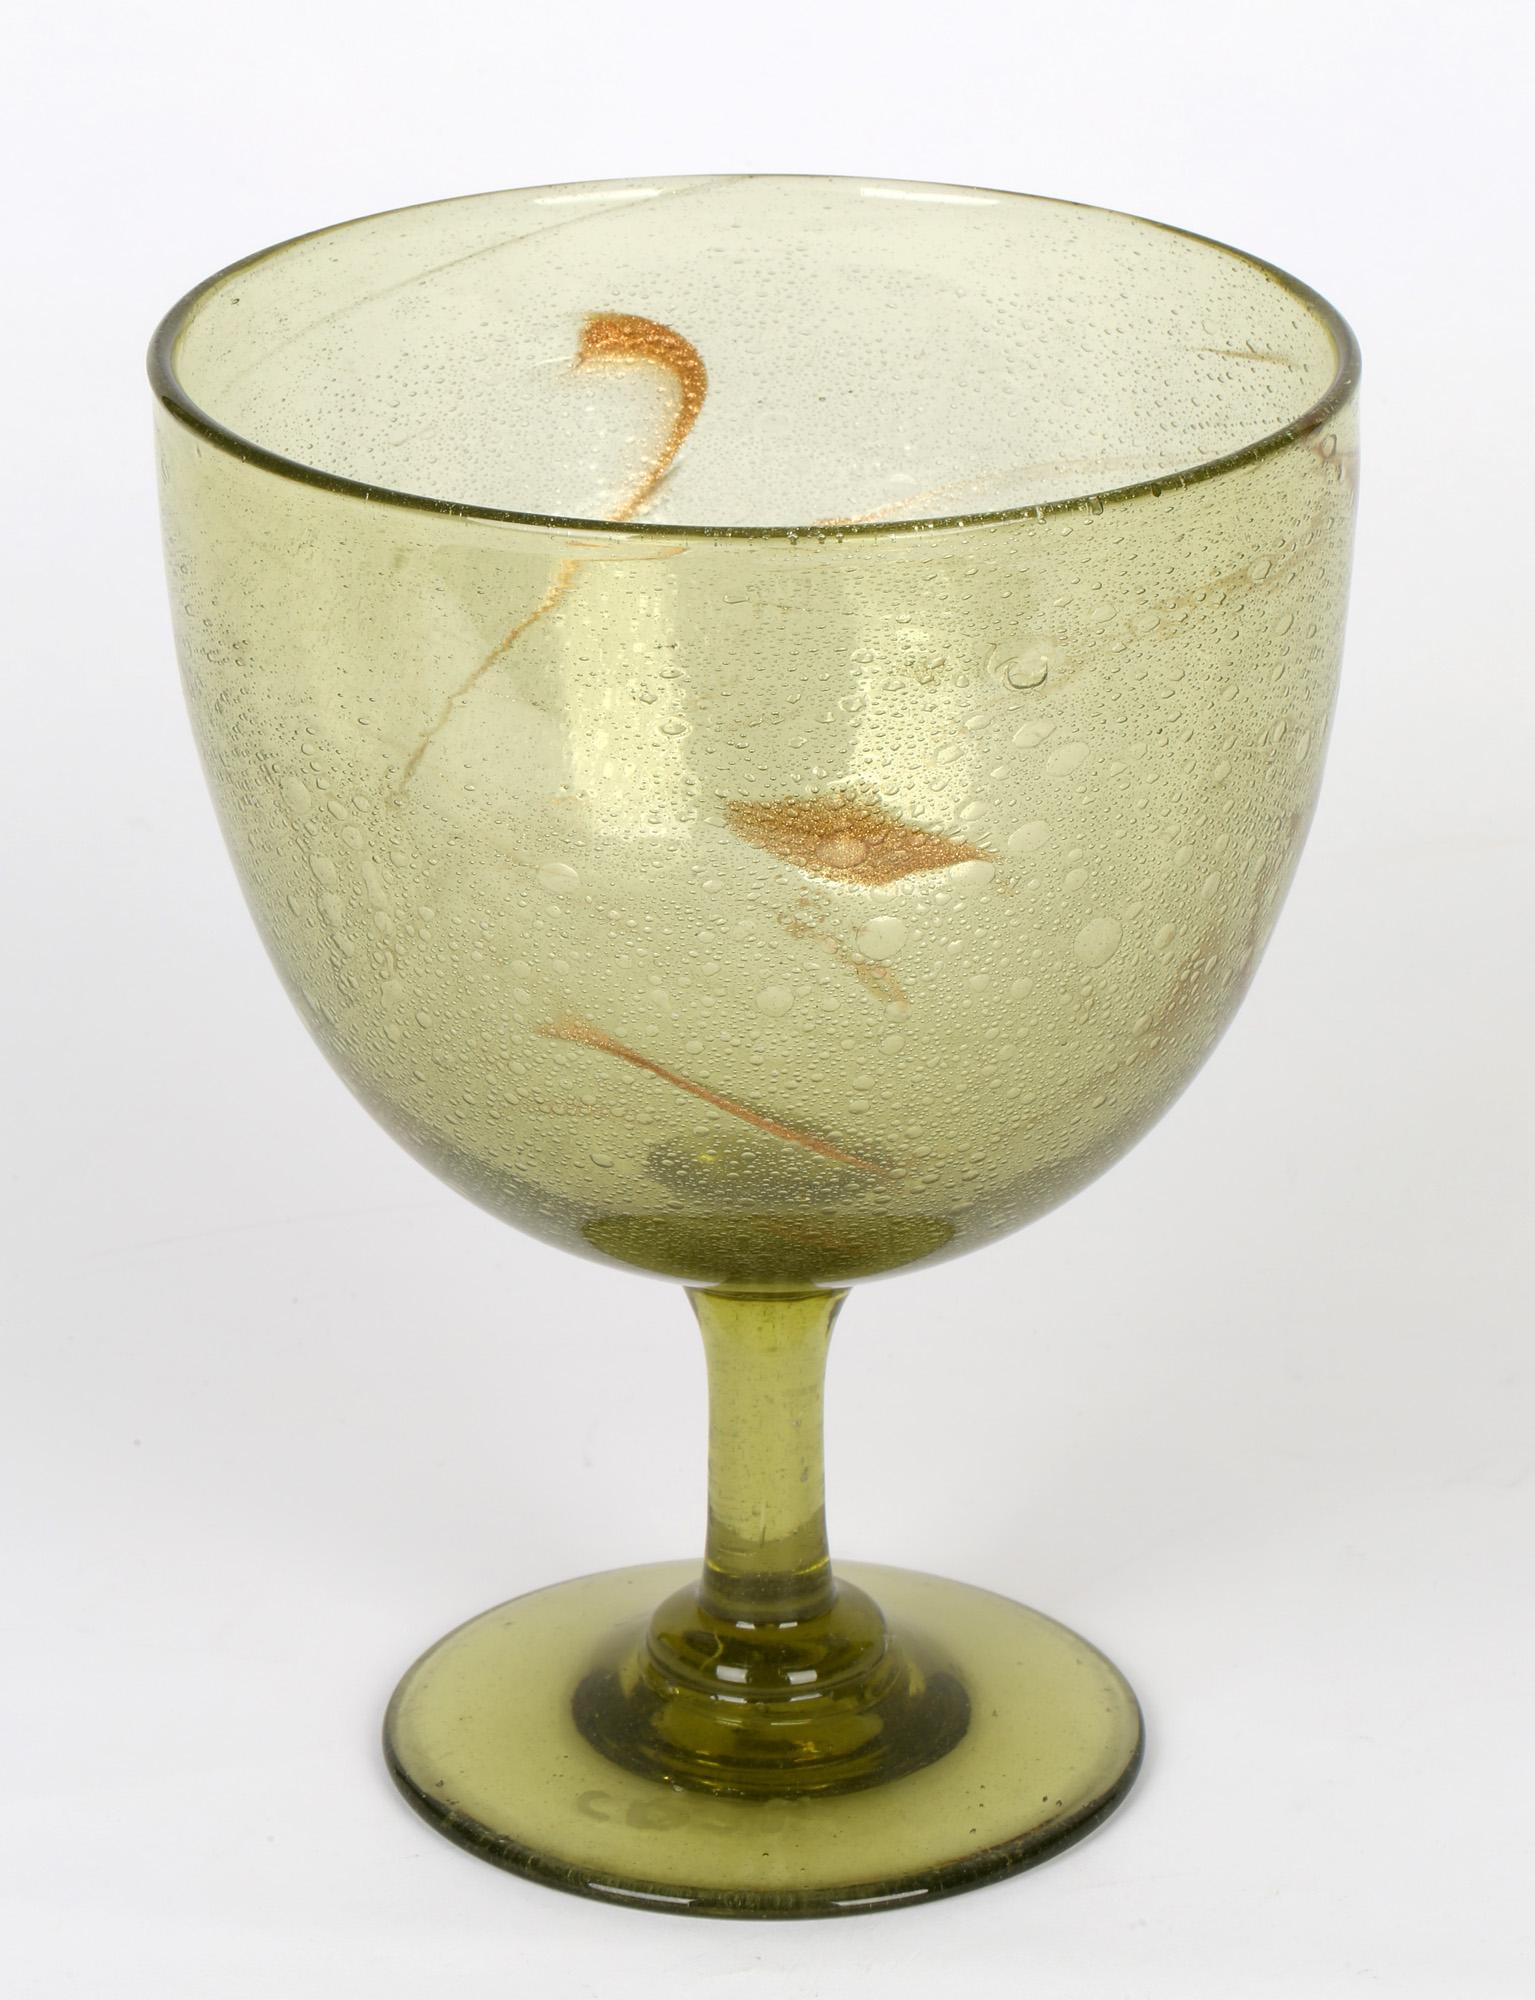 Christopher Dresser for James Coupar Clutha Glass Footed Goblet Shaped Vase 4